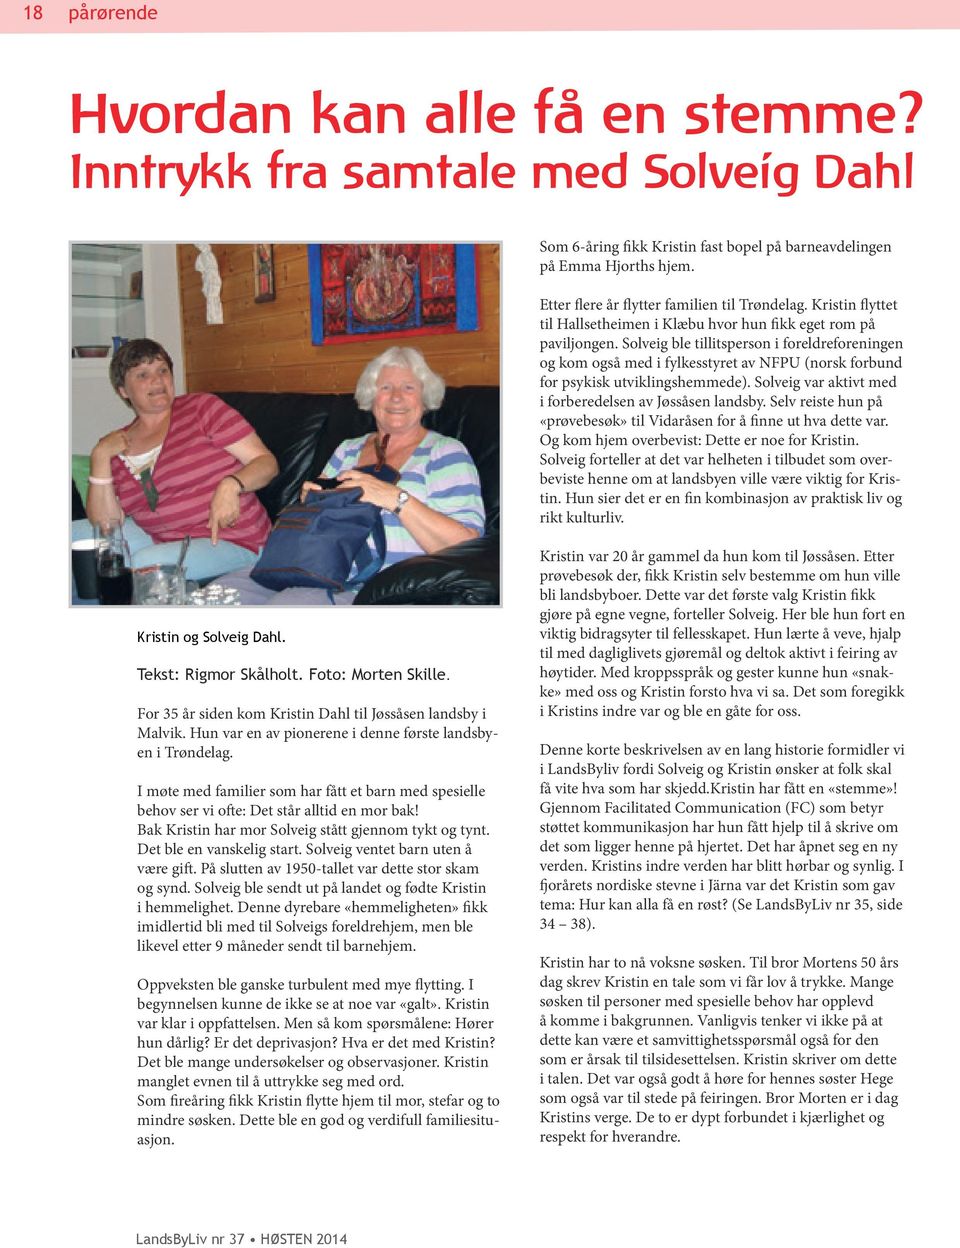 Solveig ble tillitsperson i foreldreforeningen og kom også med i fylkesstyret av NFPU (norsk forbund for psykisk utviklingshemmede). Solveig var aktivt med i forberedelsen av Jøssåsen landsby.